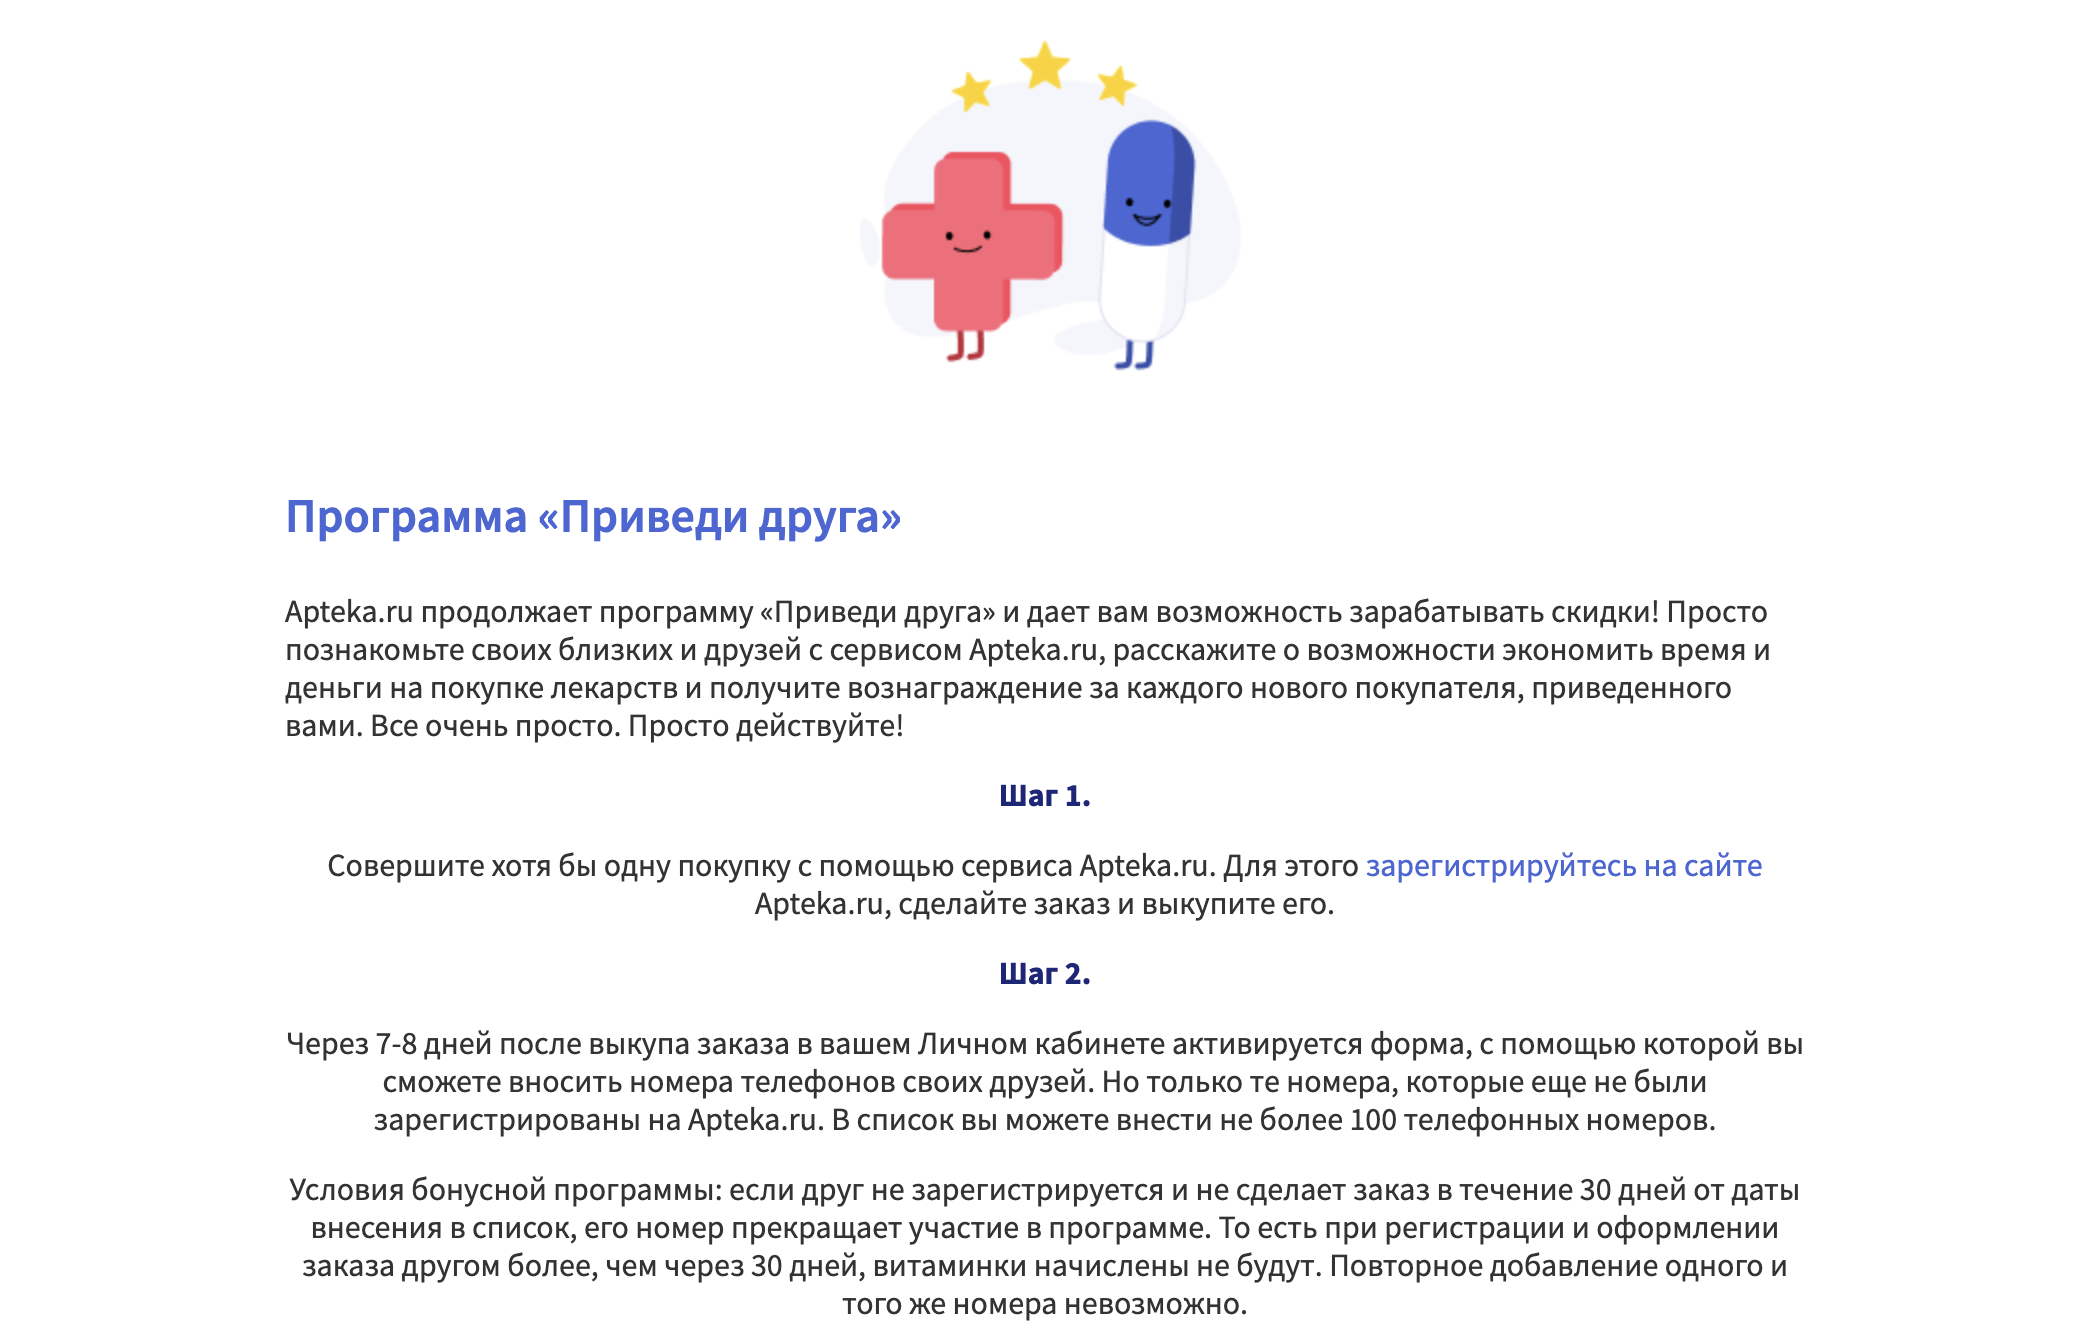 Обзор программы Apteka.ru "Приведи друга"